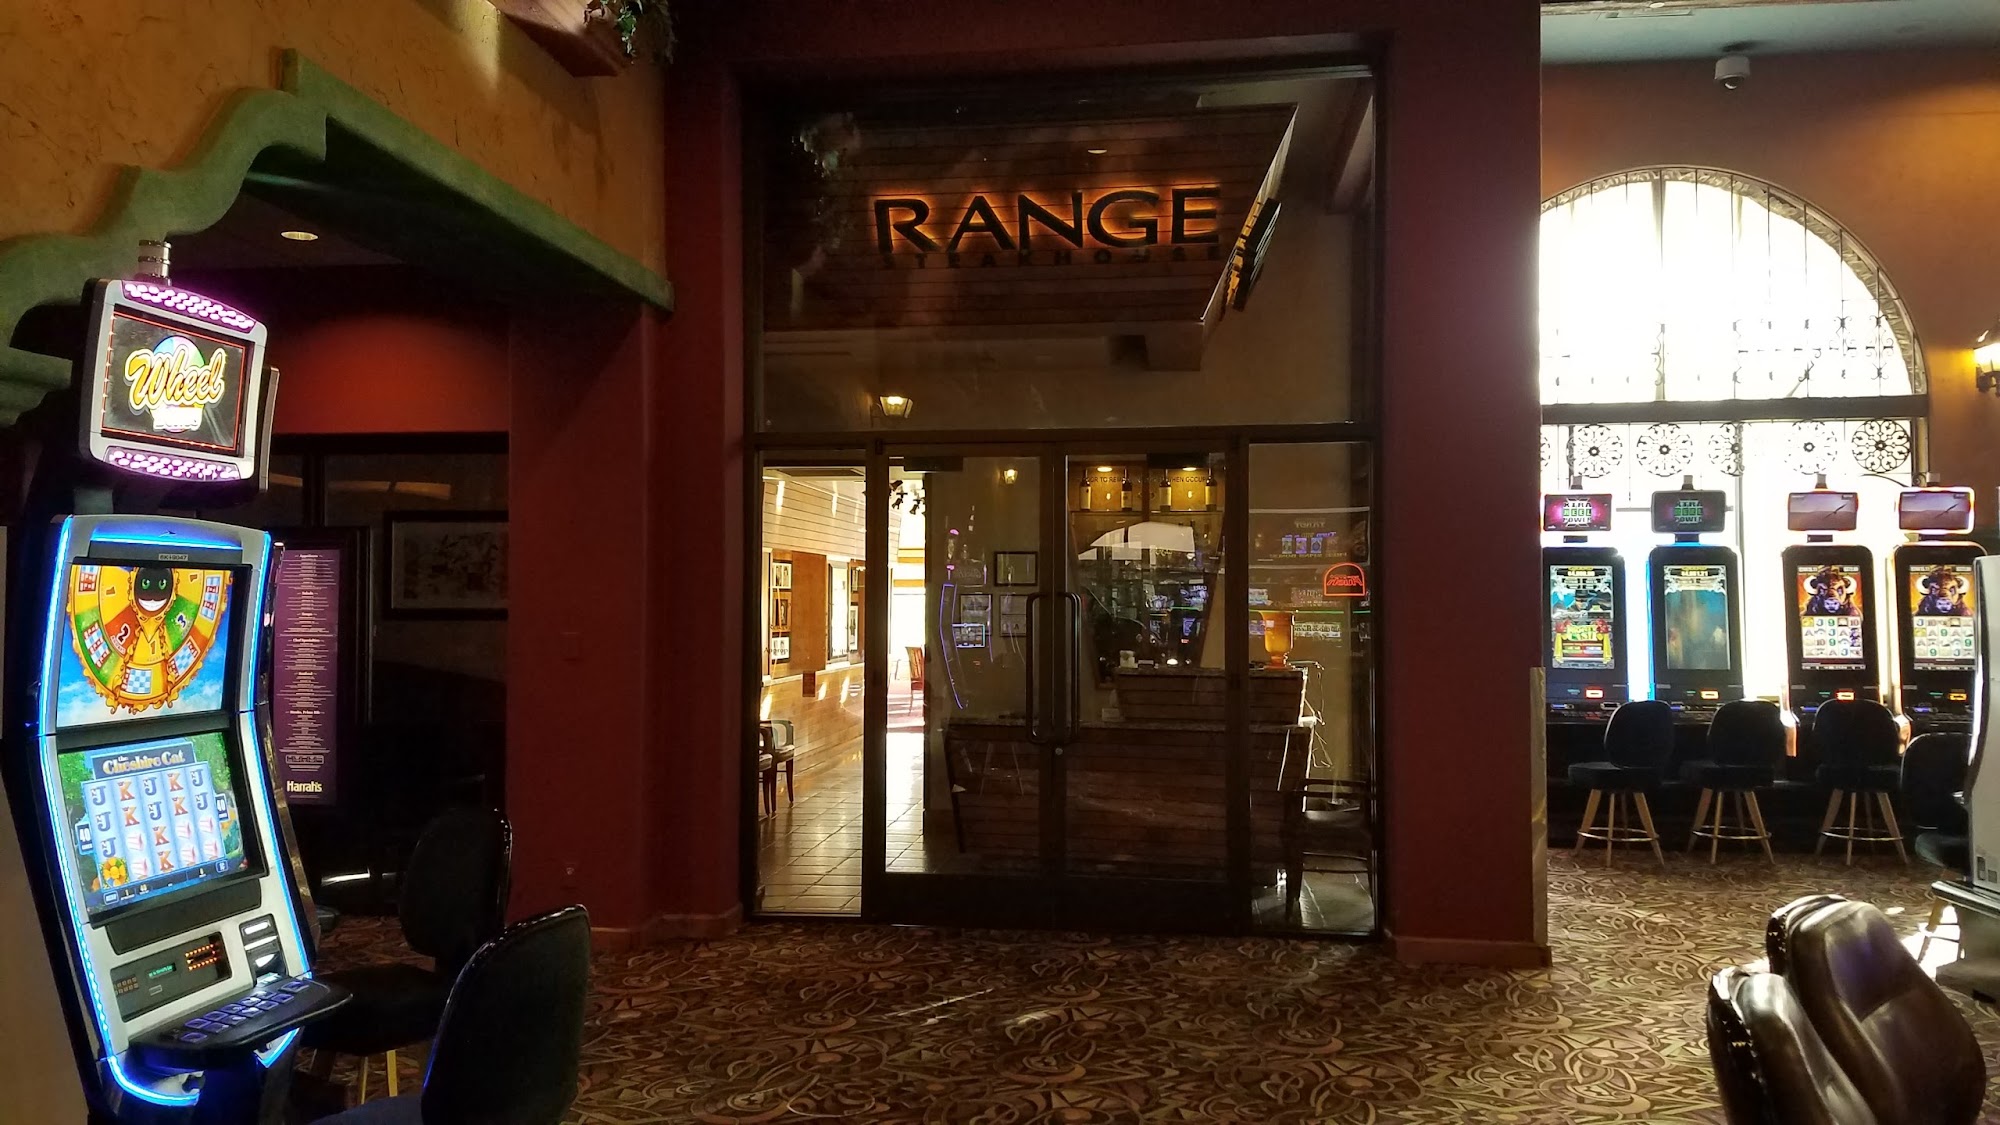 The Range Steakhouse